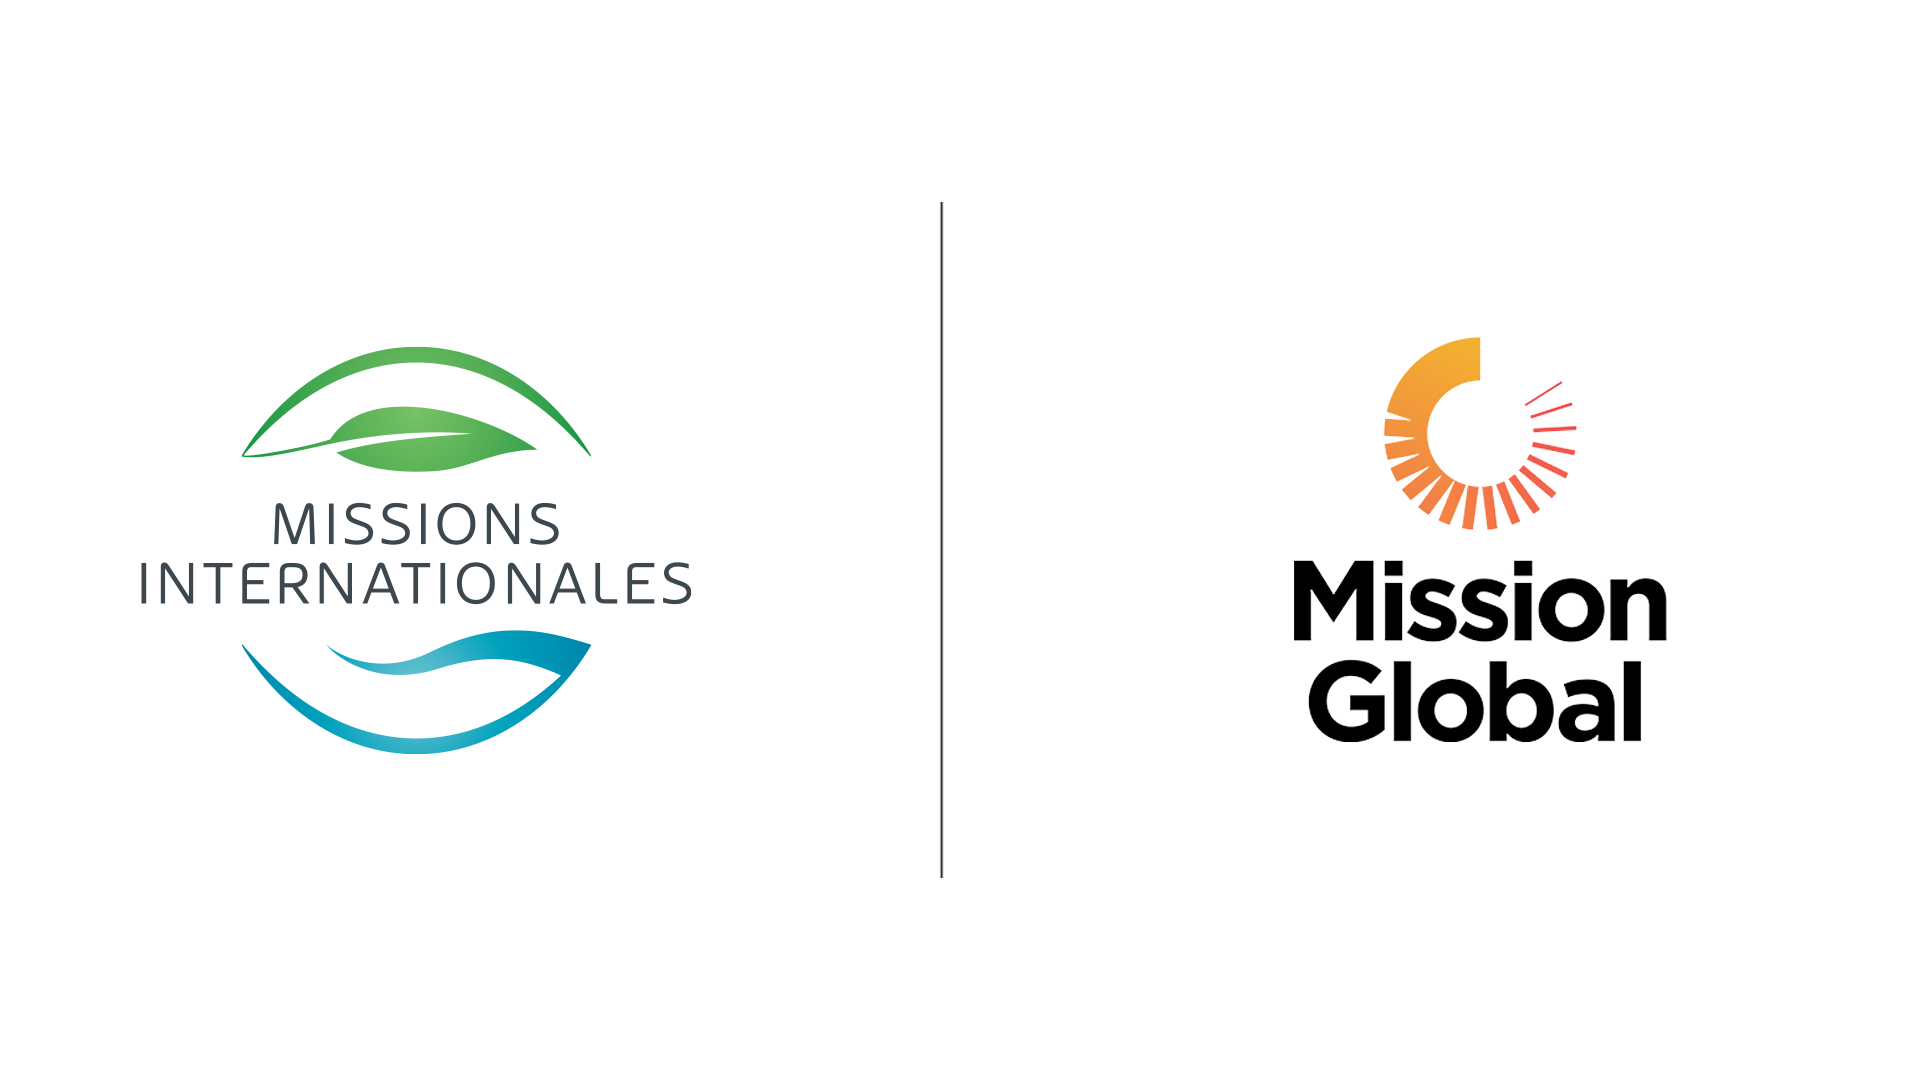 Le logo des missions internationales et le logo de Mission Global côte à côte